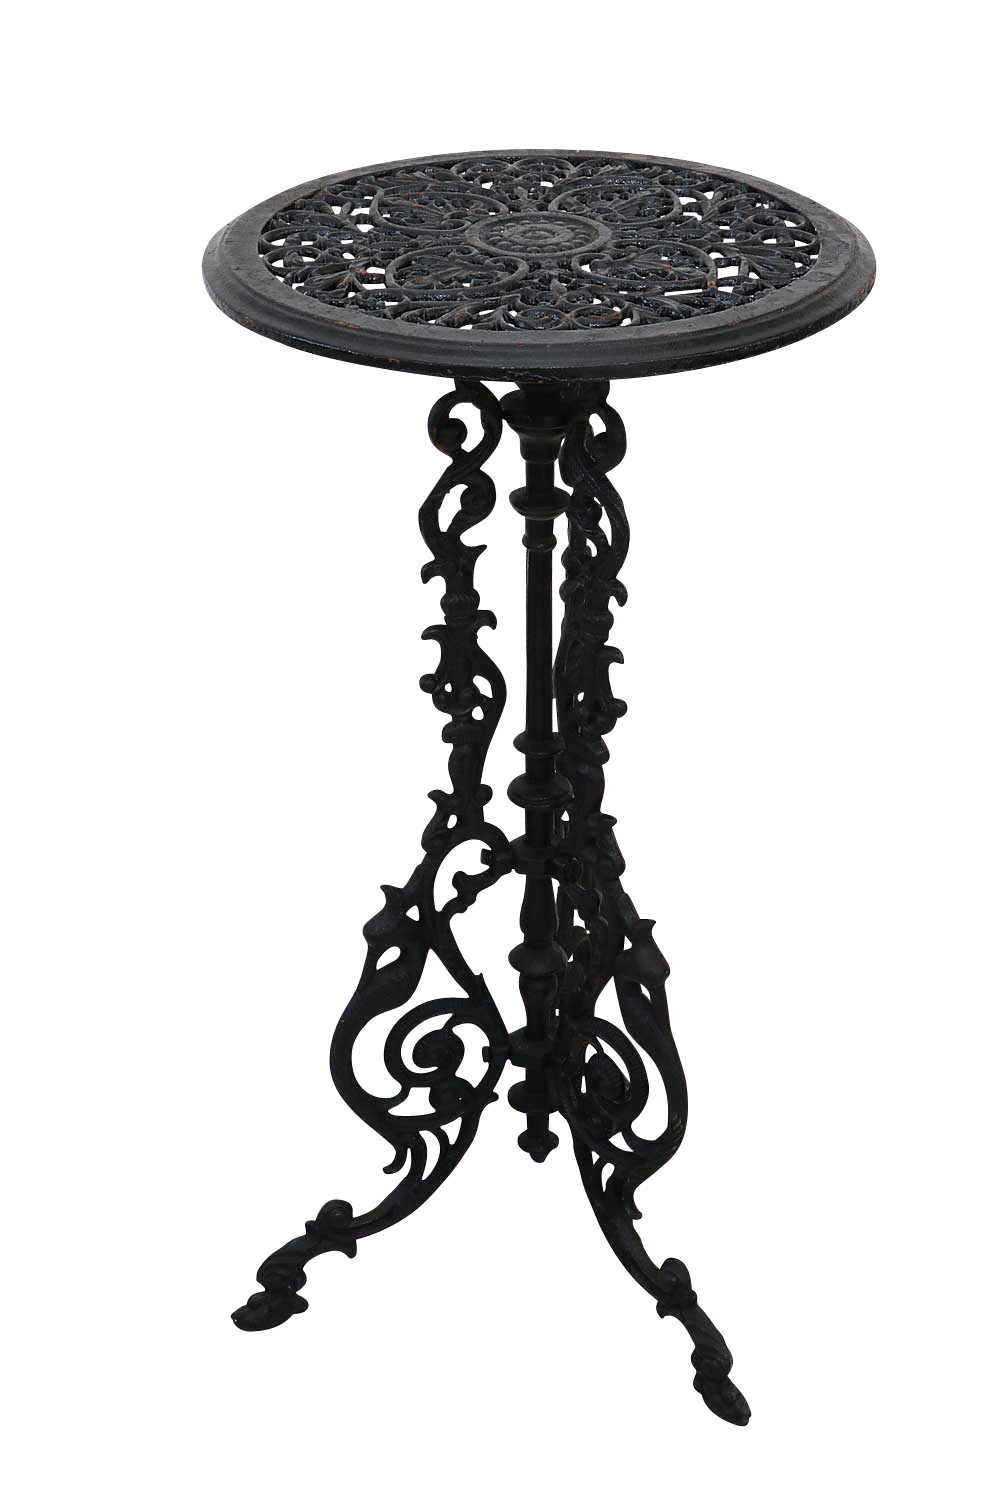 Gartentisch Eisen 72cm Tisch Beistelltisch Antik-Stil Farbe silber-schwarz 